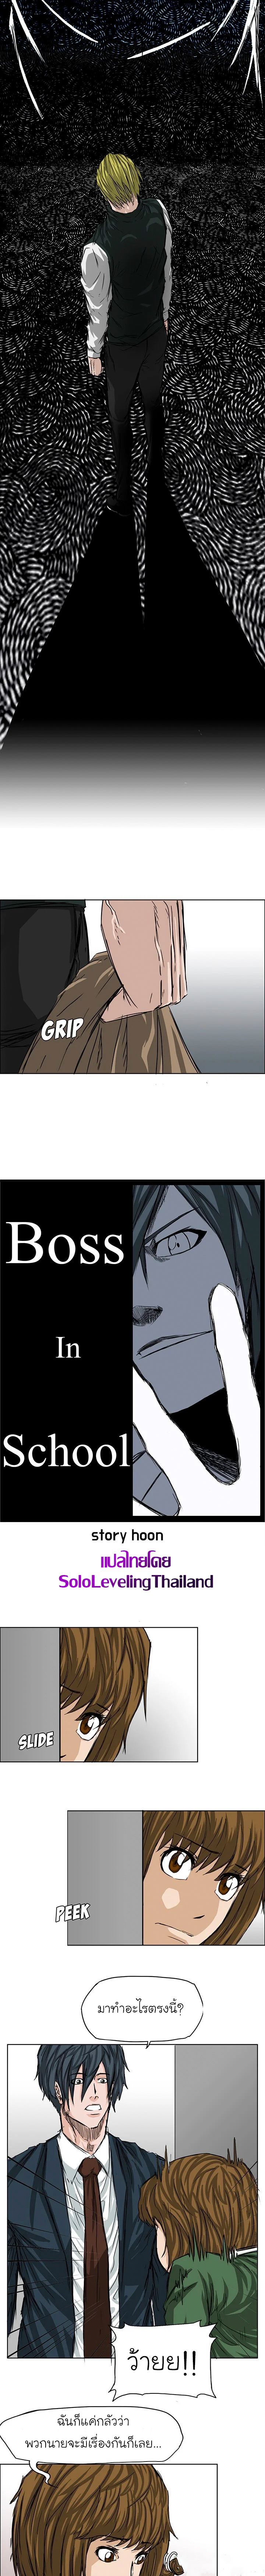 Boss in School18 (6)